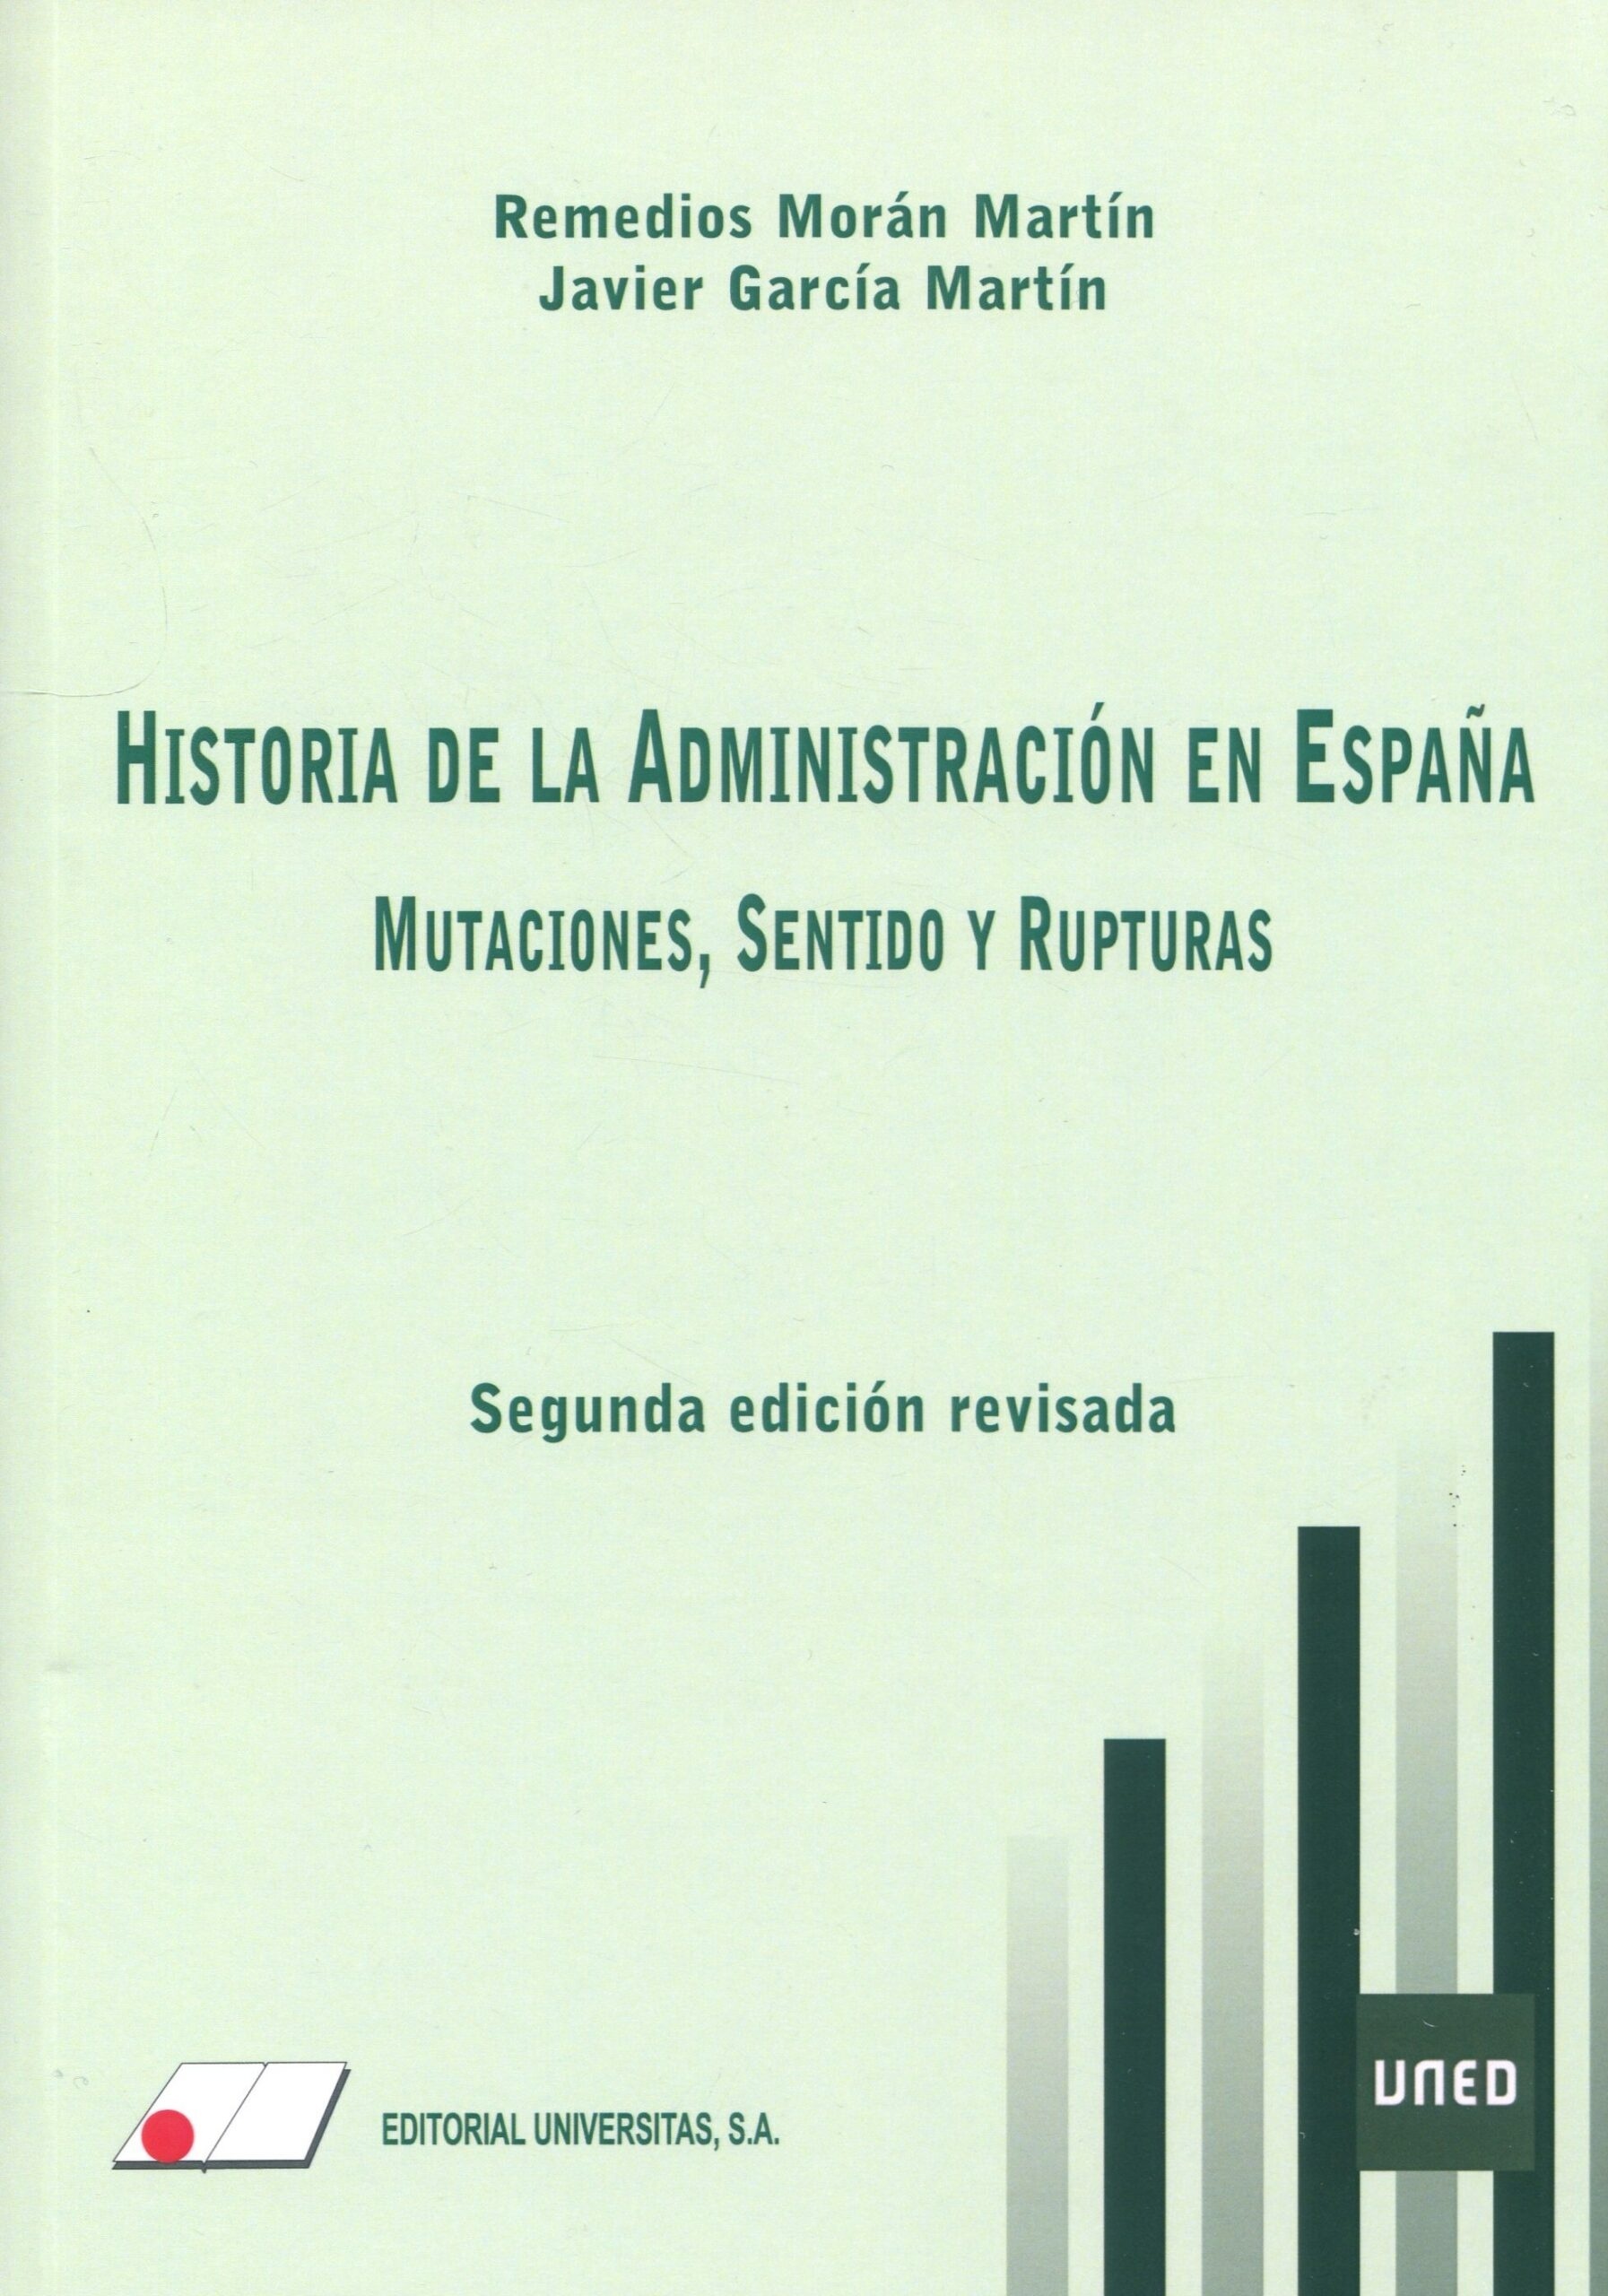 Historia de la Administración en España: Mutaciones, Sentido y Rupturas